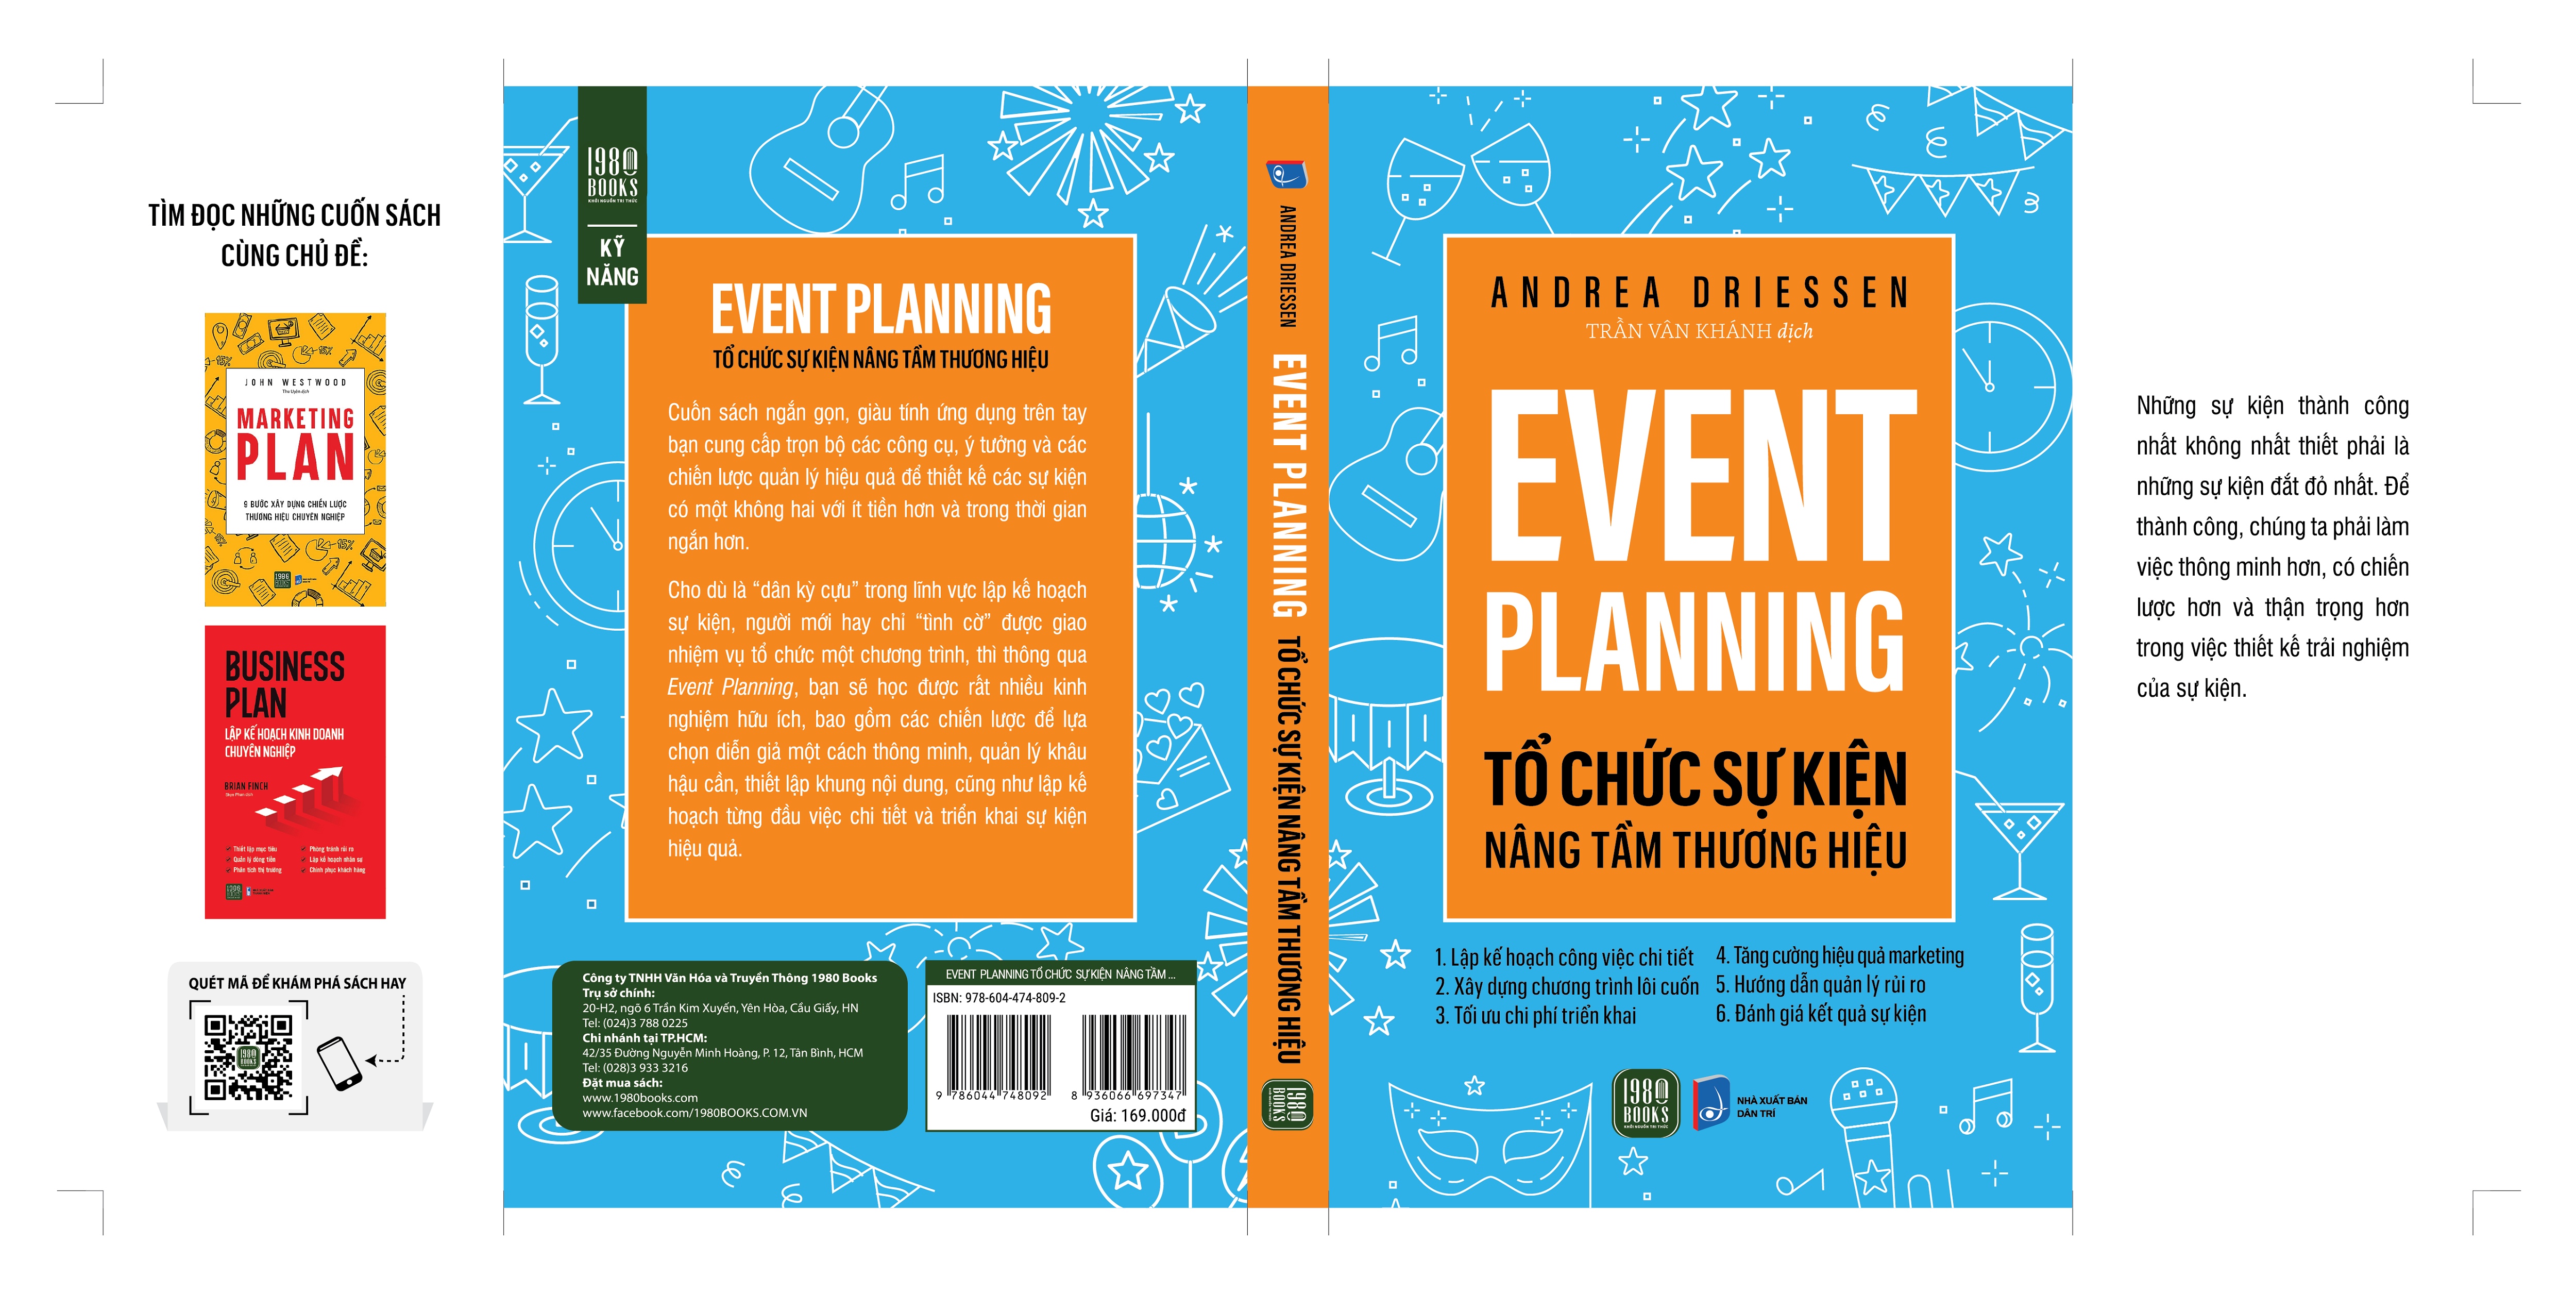 Event Planning - Tổ Chức Sự Kiện, Nâng Tầm Thương Hiệu